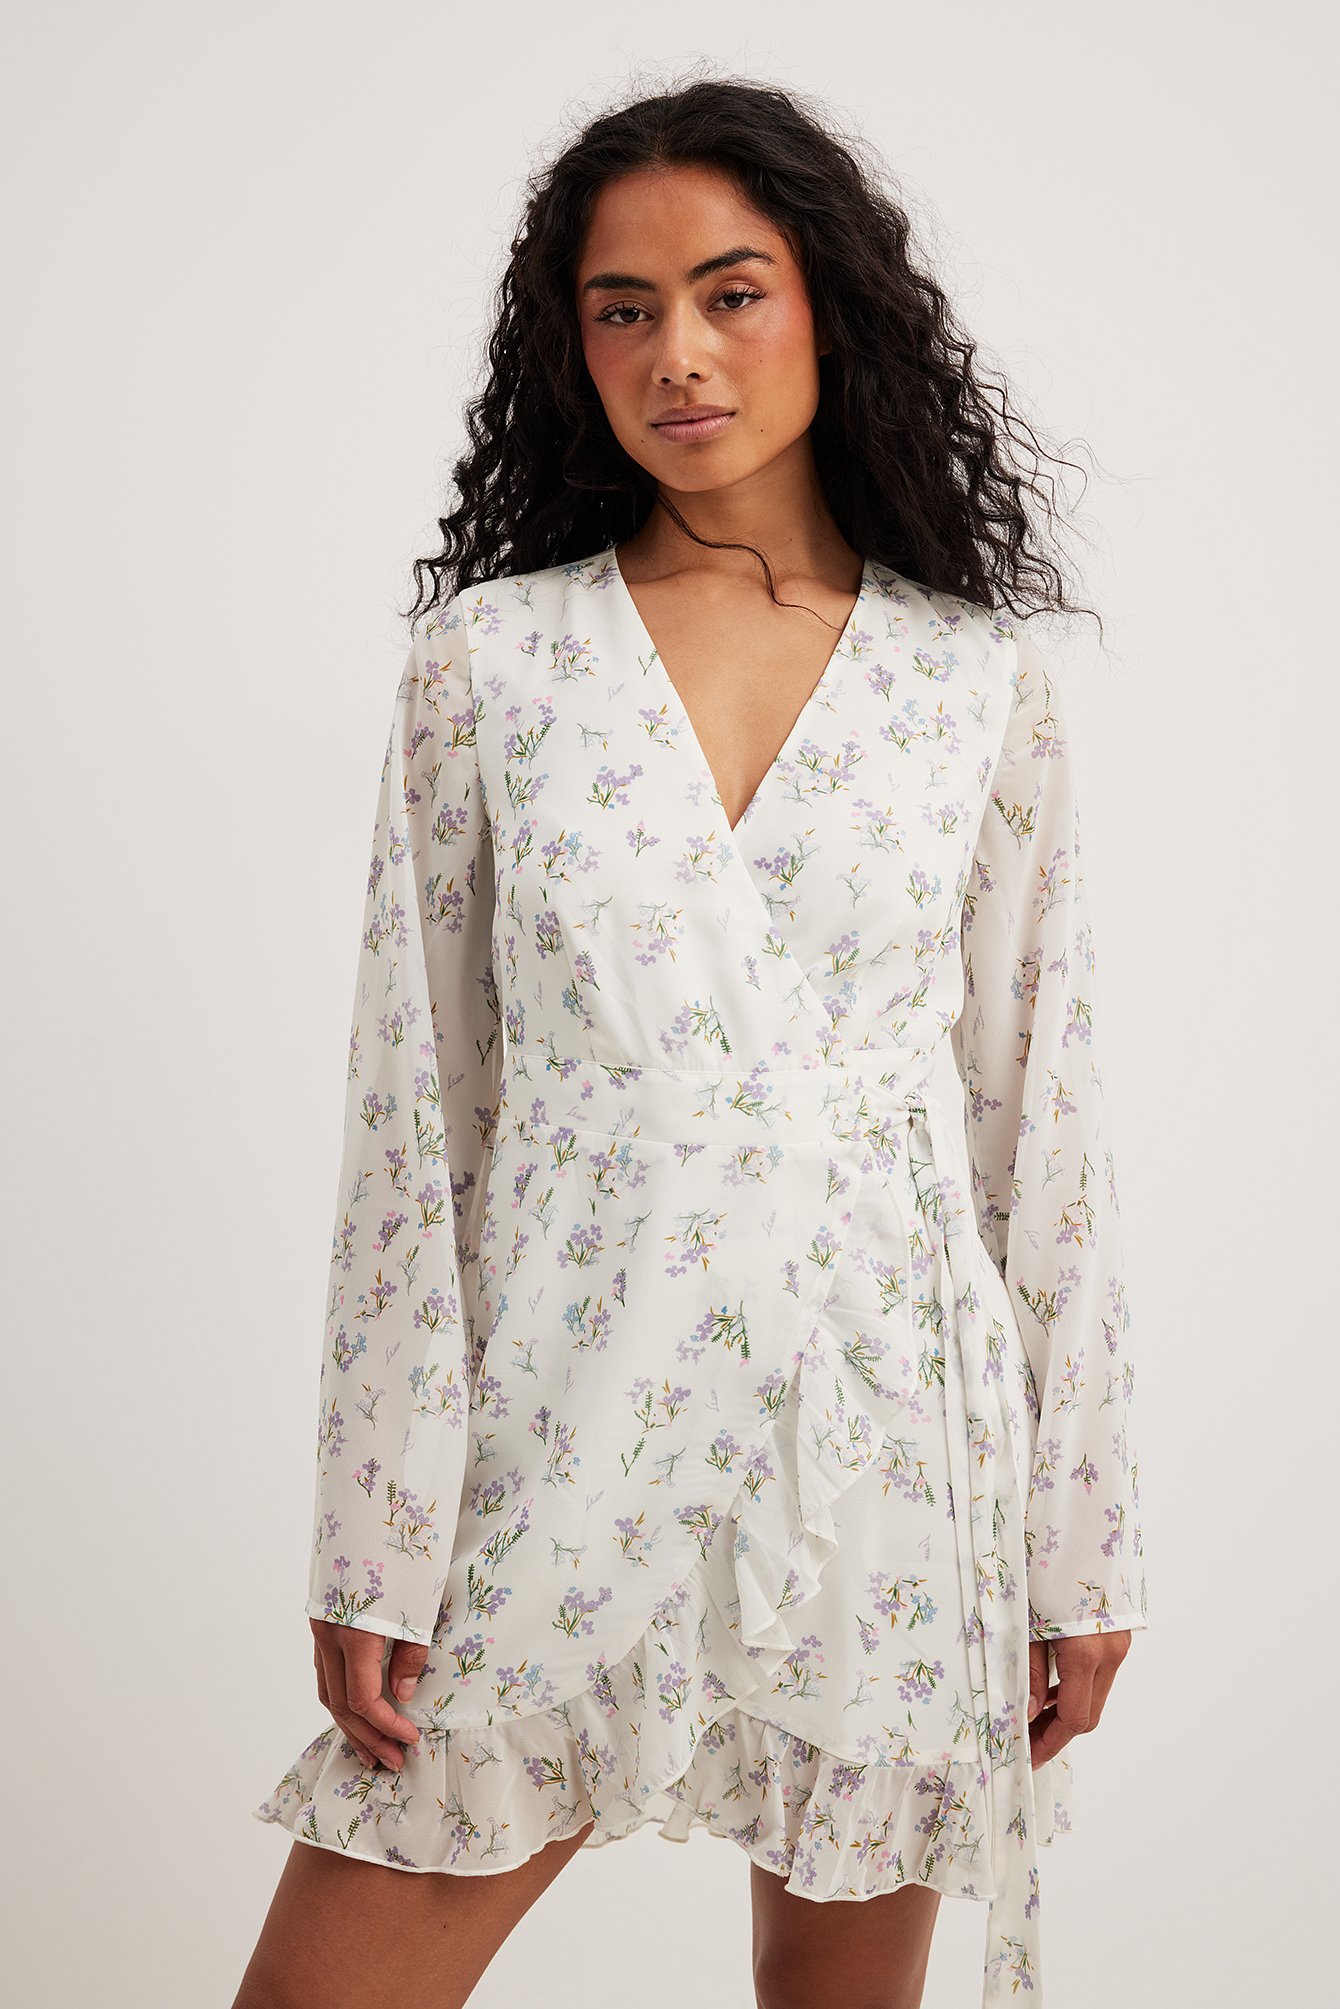 Women clothes Strap Floral Print Slit Maxi Dress - The Little Connection